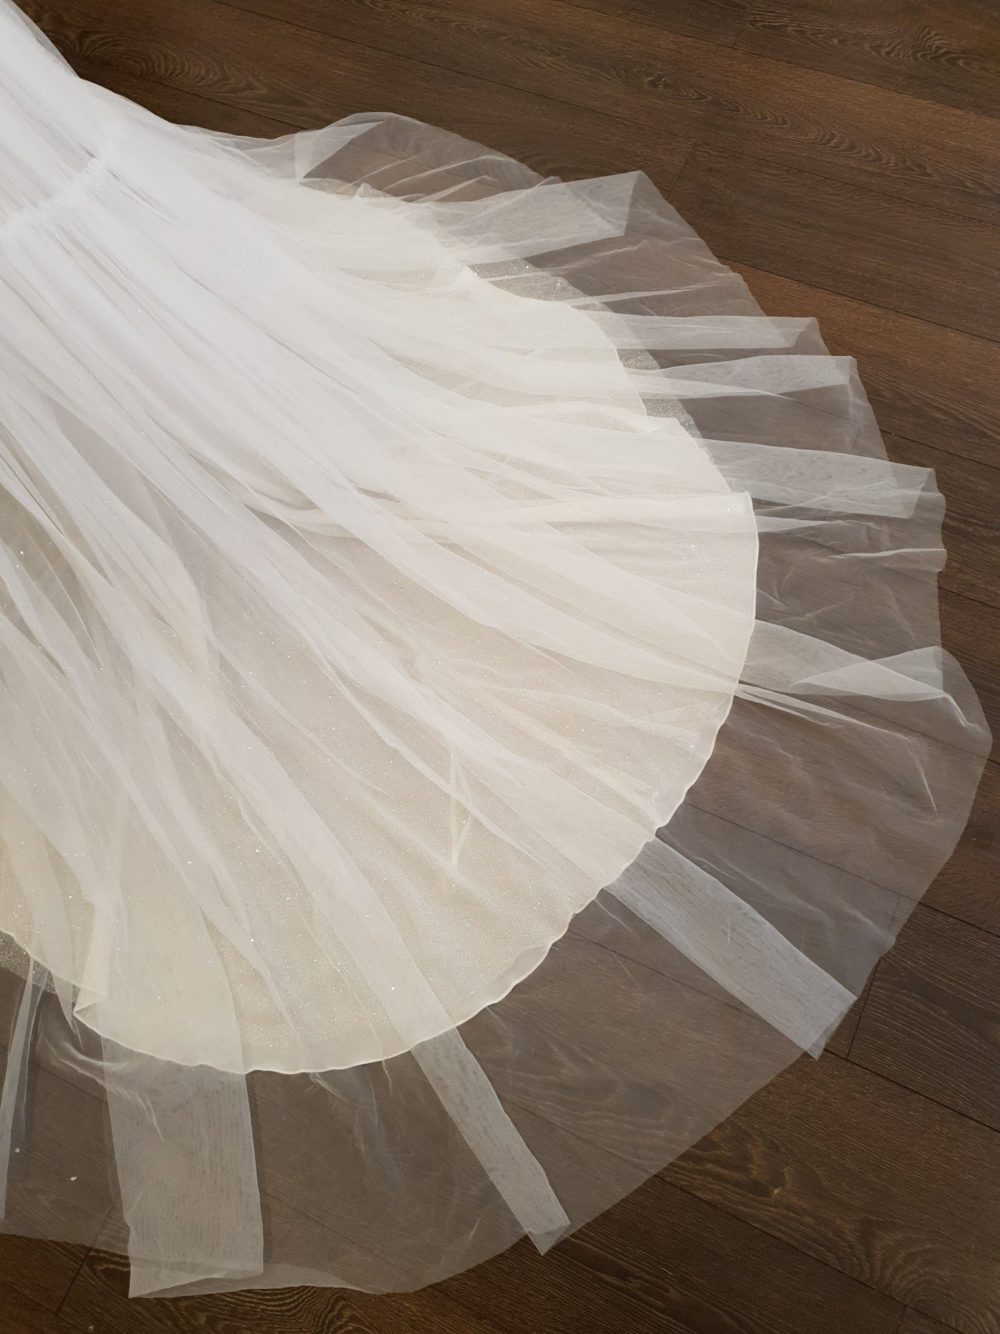 Pollardi Fashion Group. Asymmetrisk brudekjole med en enkelt bred skulderstrop og det smukkeste perlebroderi. Kjolens lette slanke skørt er i tyl.